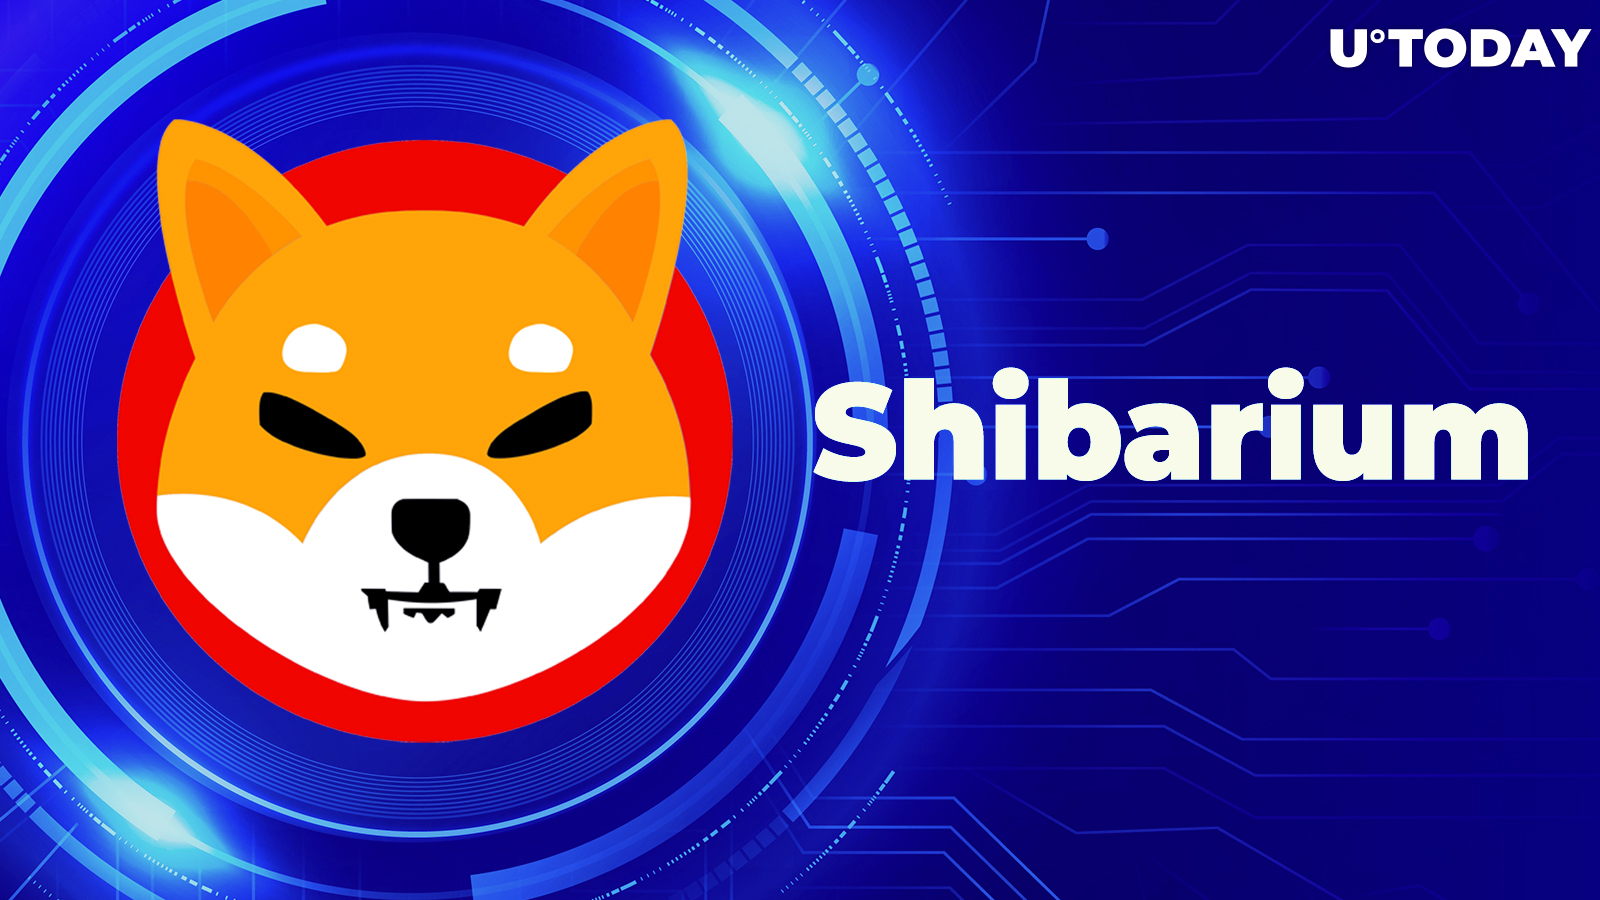 Shibarium Smashes New Milestone as Exciting Times on Horizon